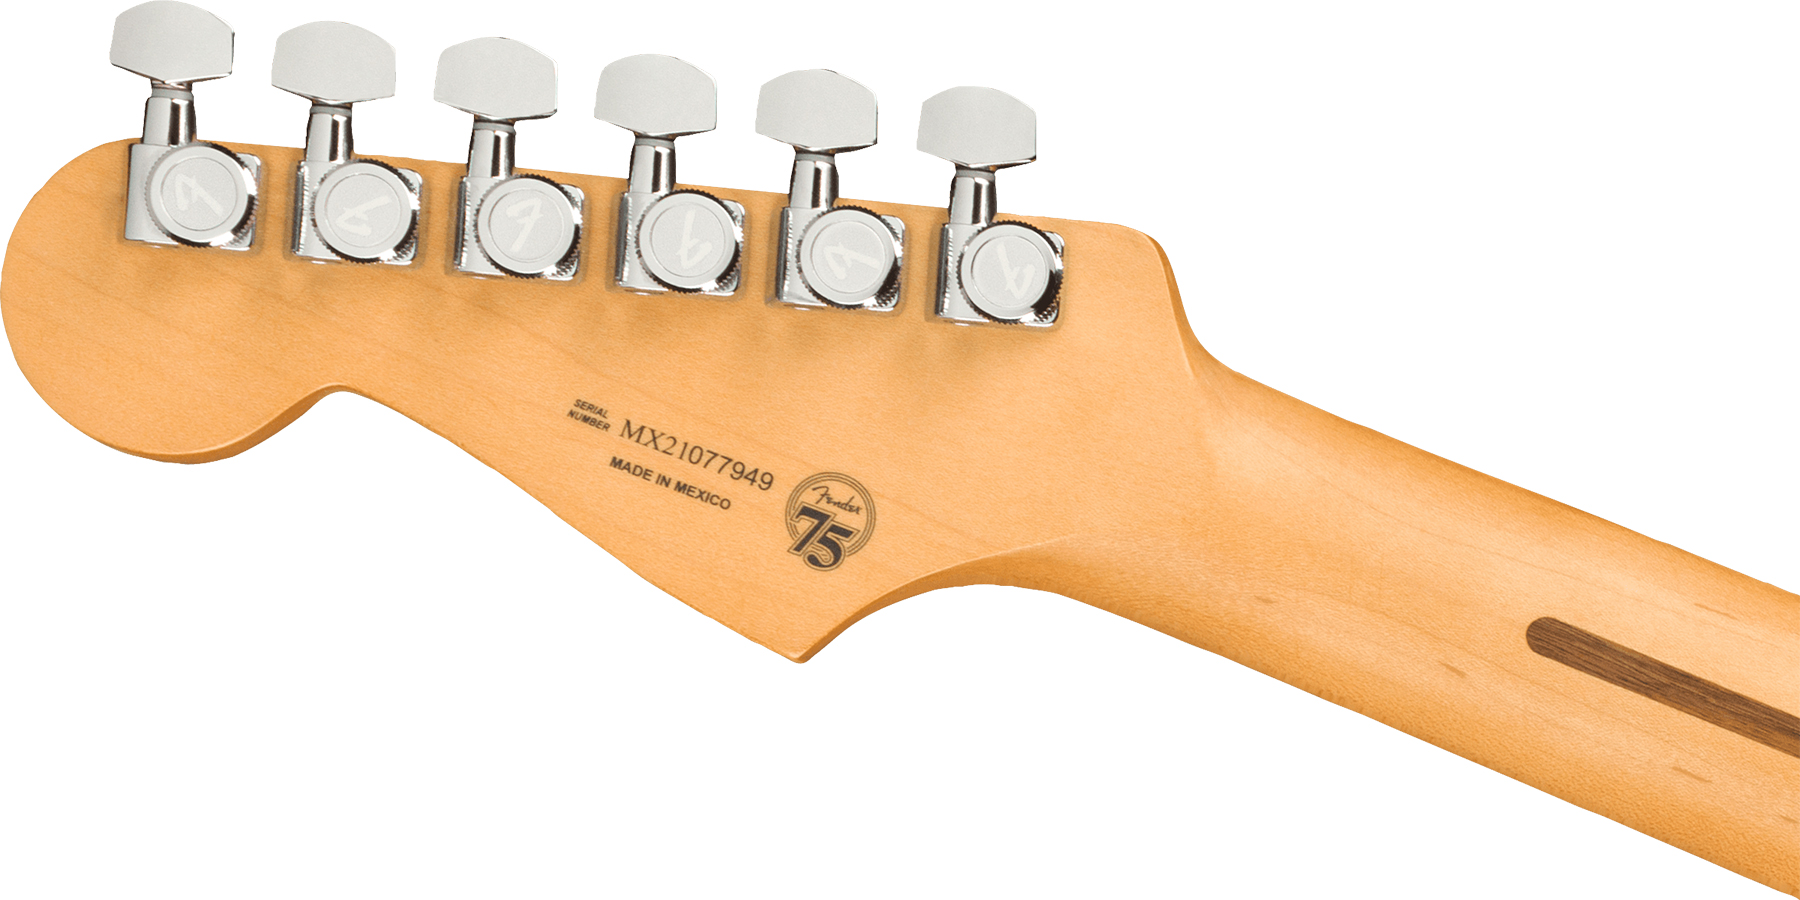 Fender Strat Player Plus Mex 3s Trem Mn - 3-color Sunburst - Str shape electric guitar - Variation 3